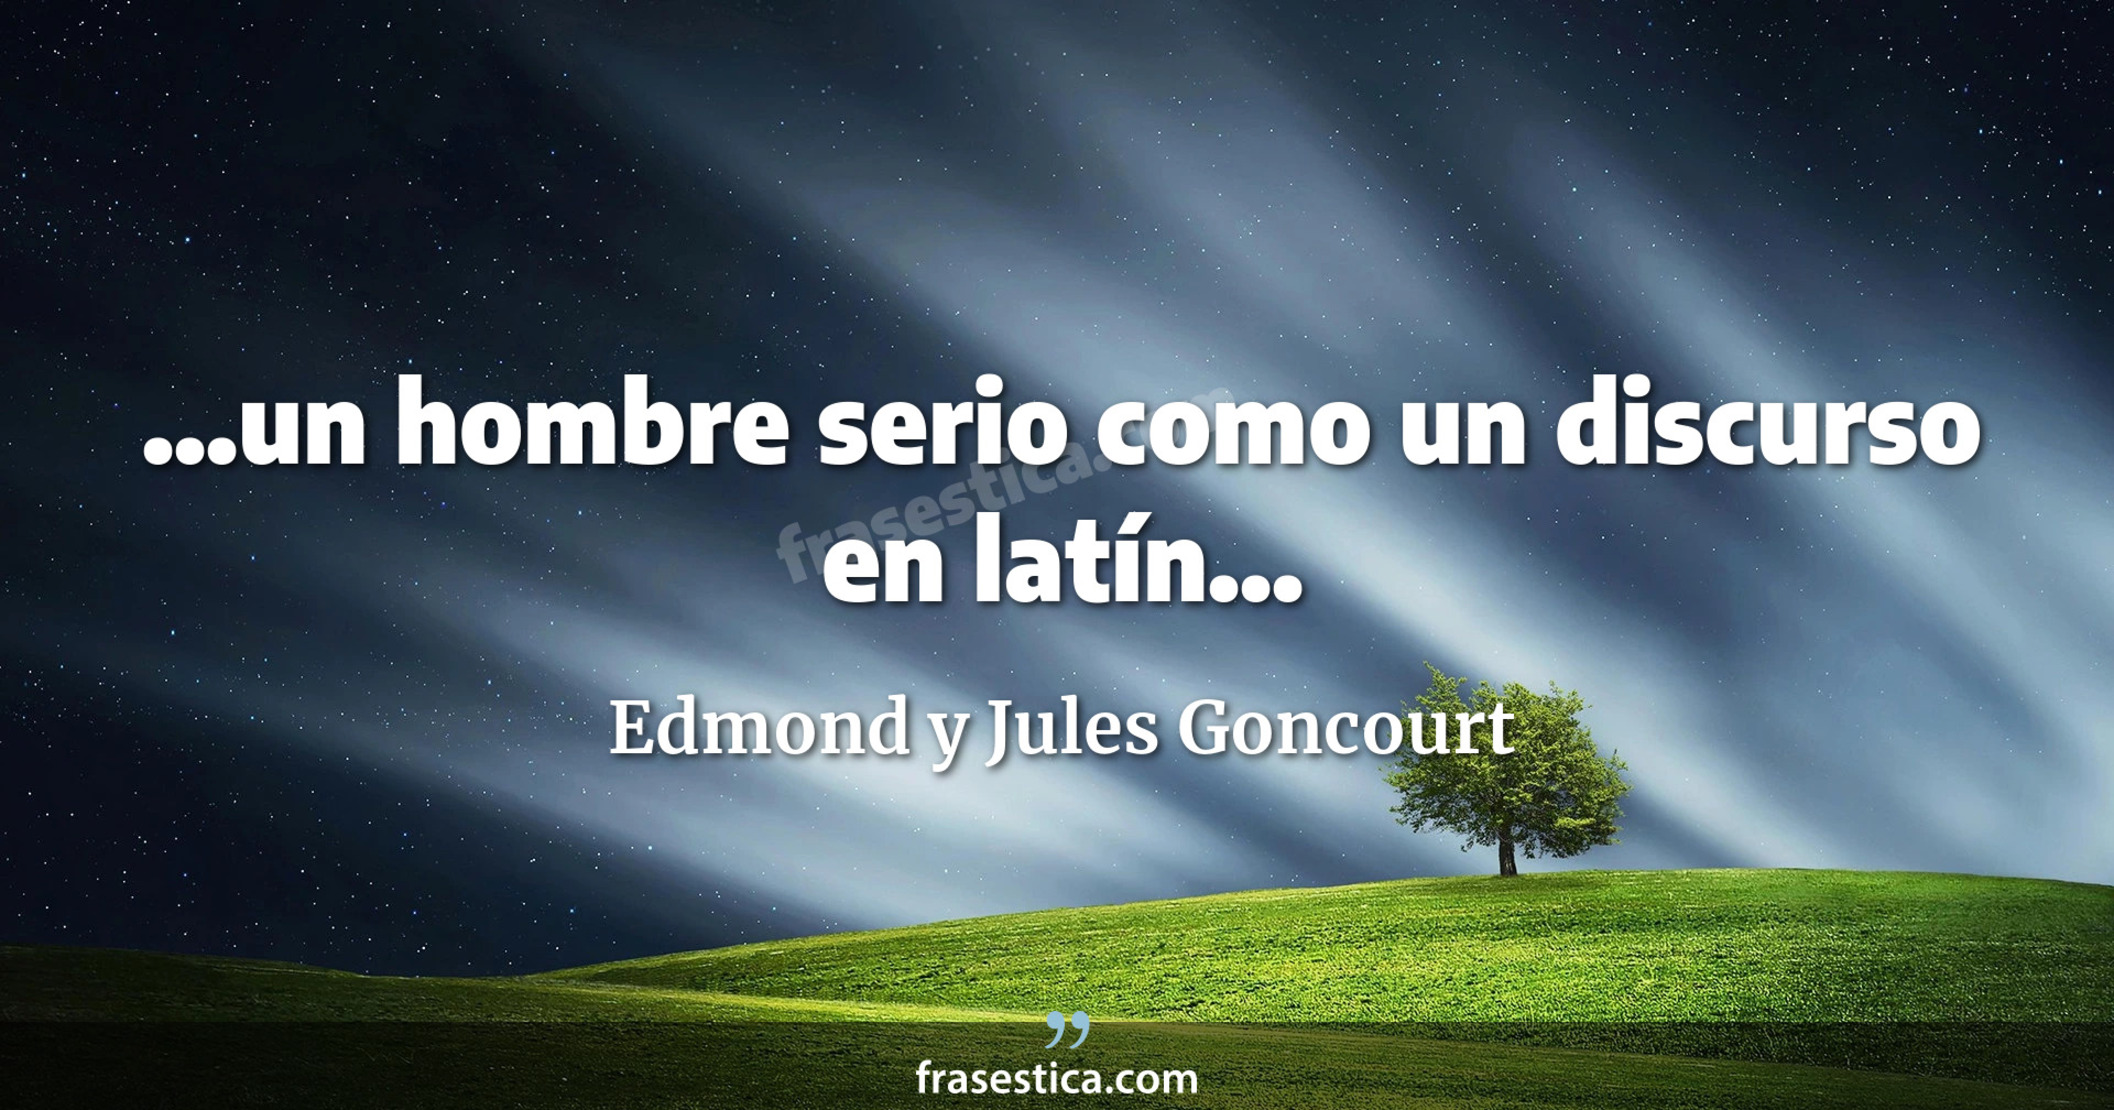 ...un hombre serio como un discurso en latín... - Edmond y Jules Goncourt